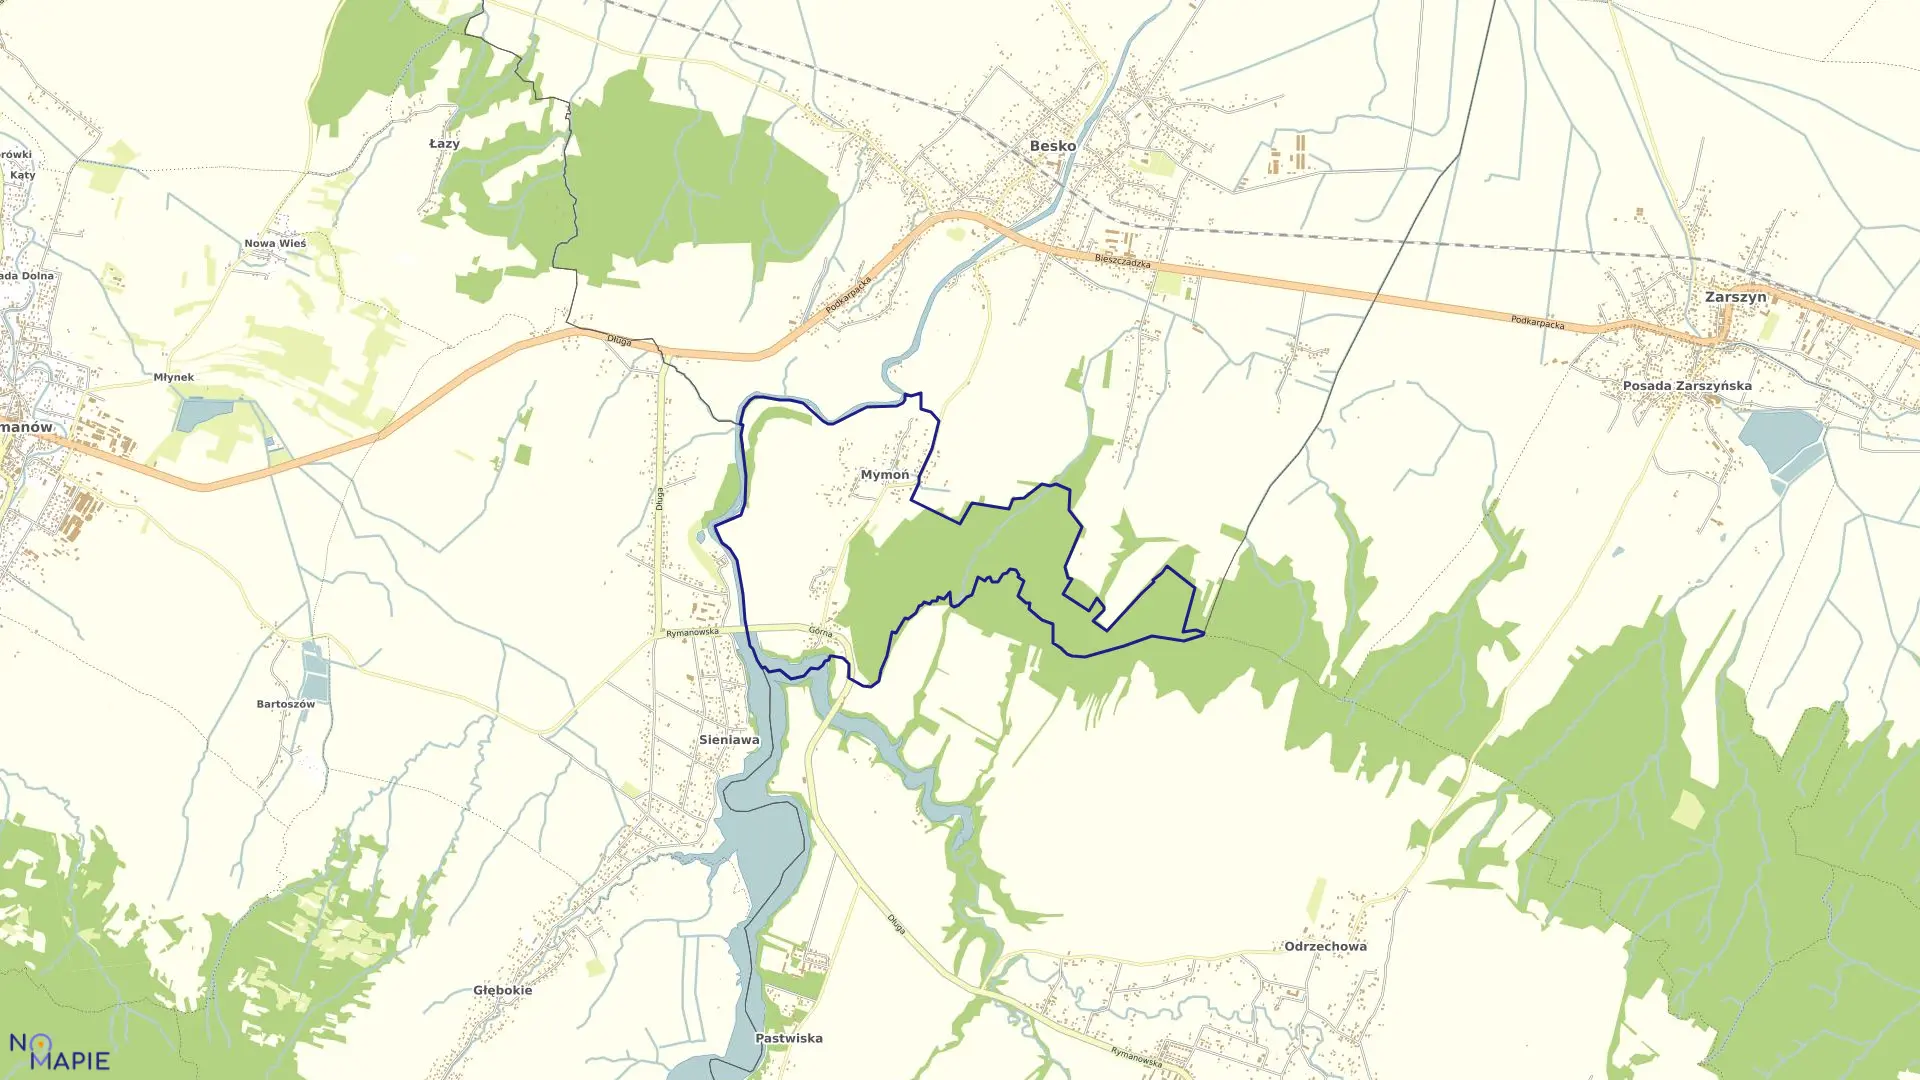 Mapa obrębu Mymoń w gminie Besko